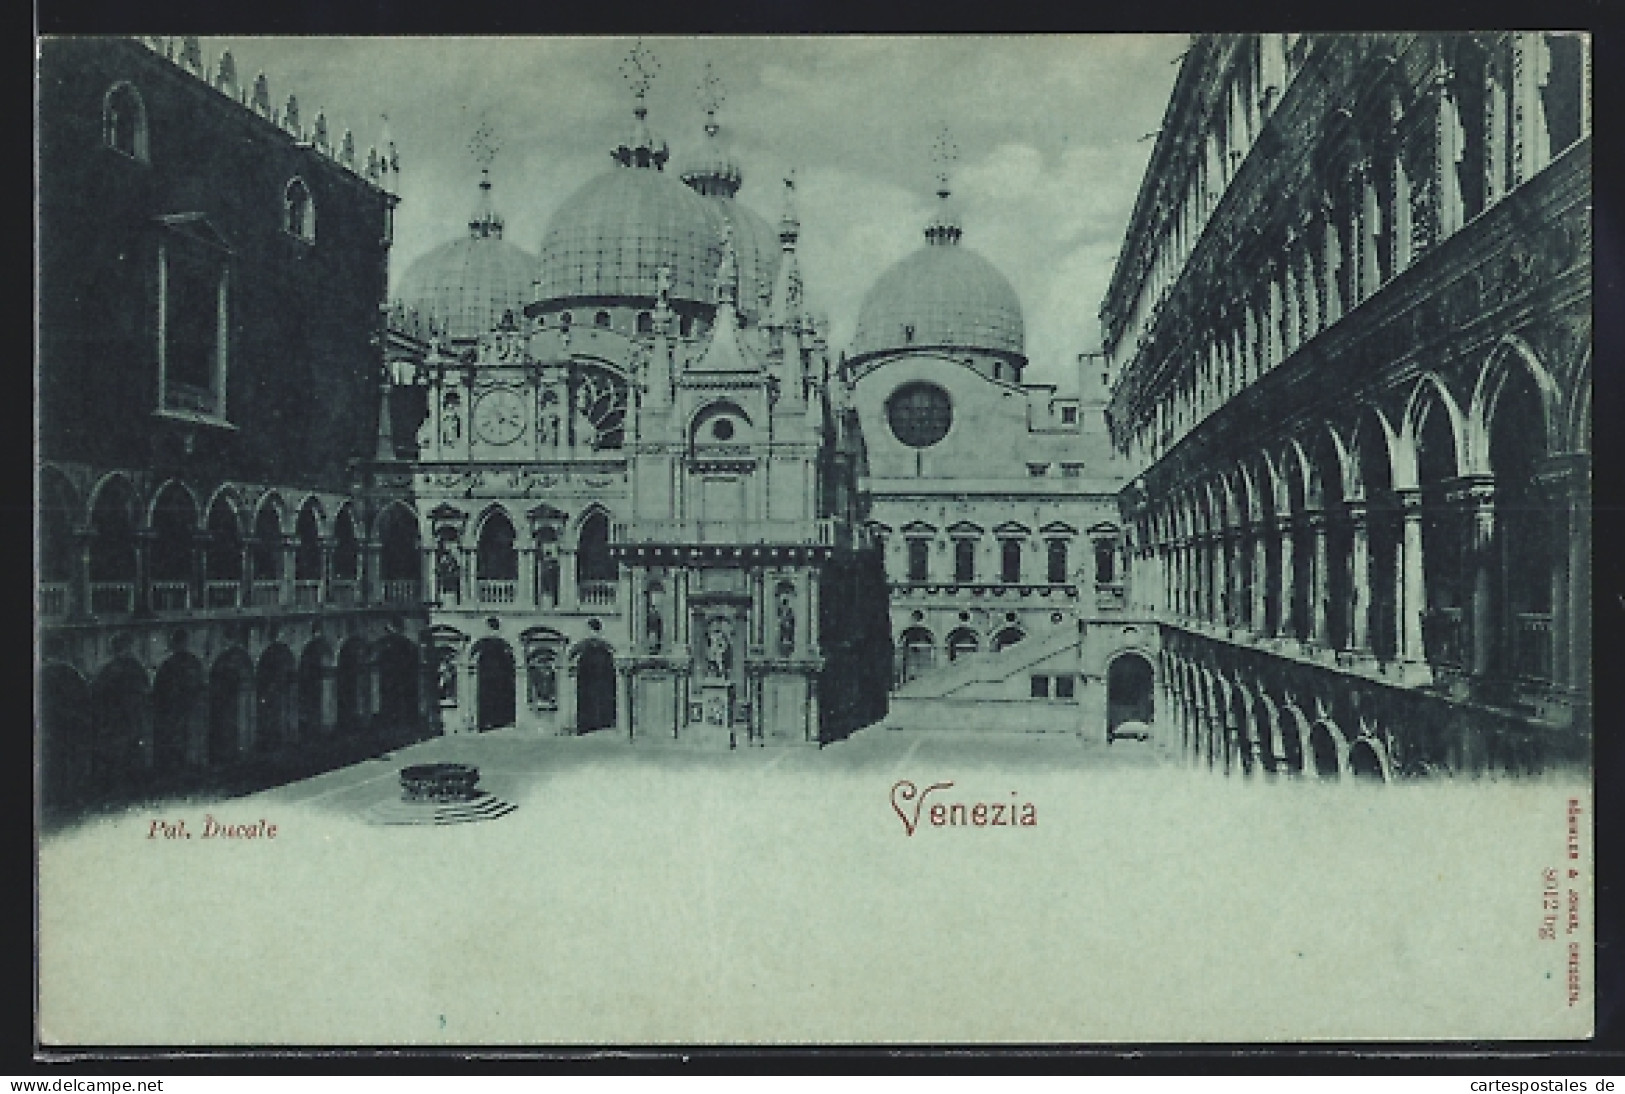 Lume Di Luna-Cartolina Venezia, Pal. Ducale  - Venezia (Venedig)